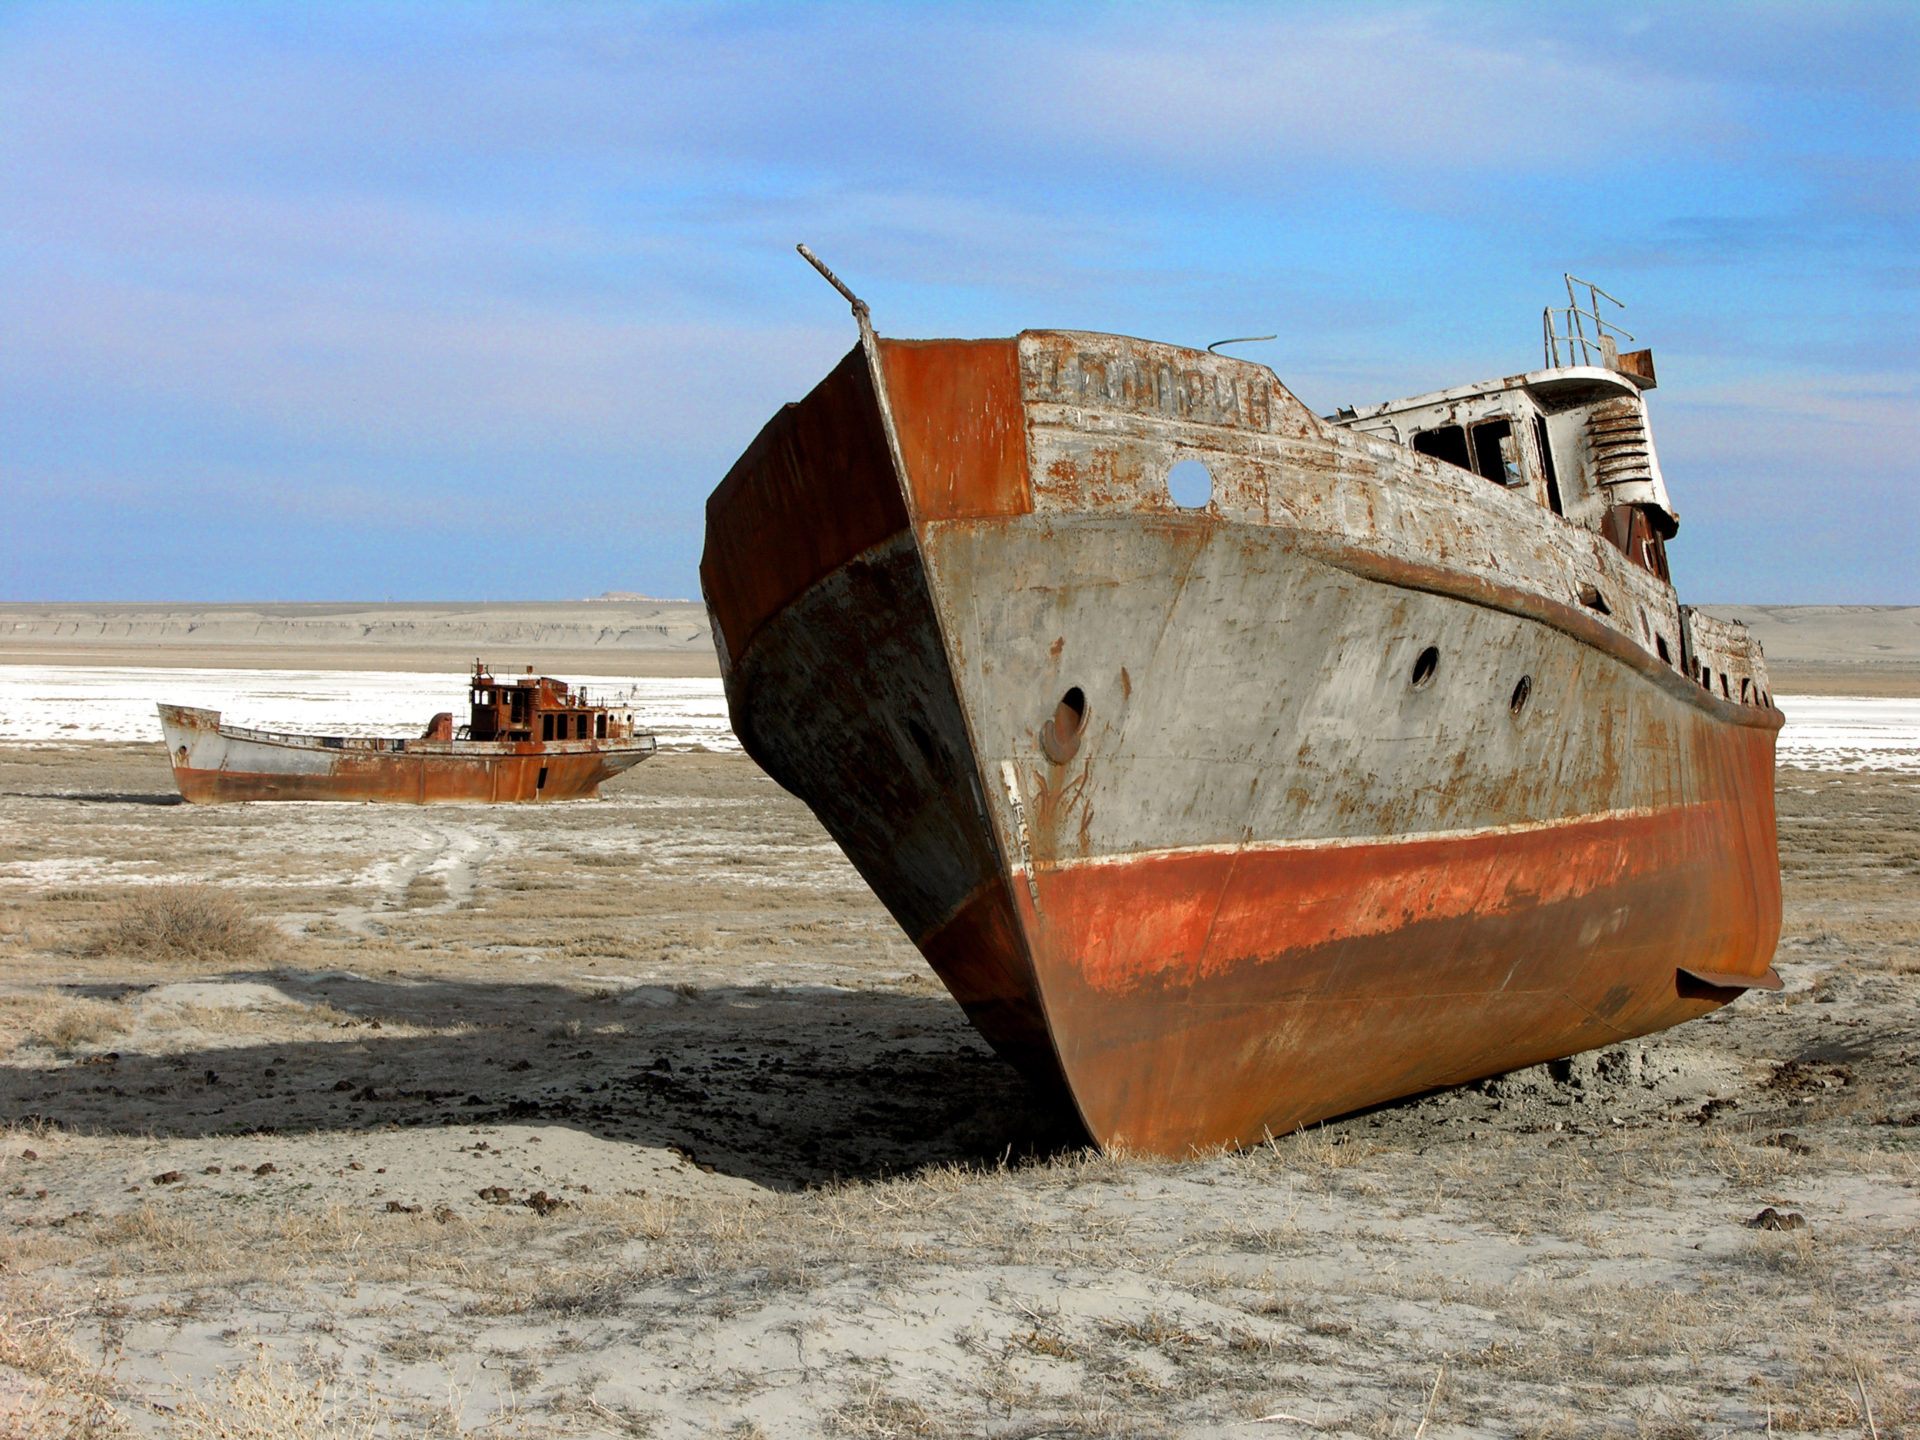 Abandoned ship near the Aral Sea. Photo by Zhanat Kulenov [CC BY-SA 3.0-igo], via Wikipedia Commons.